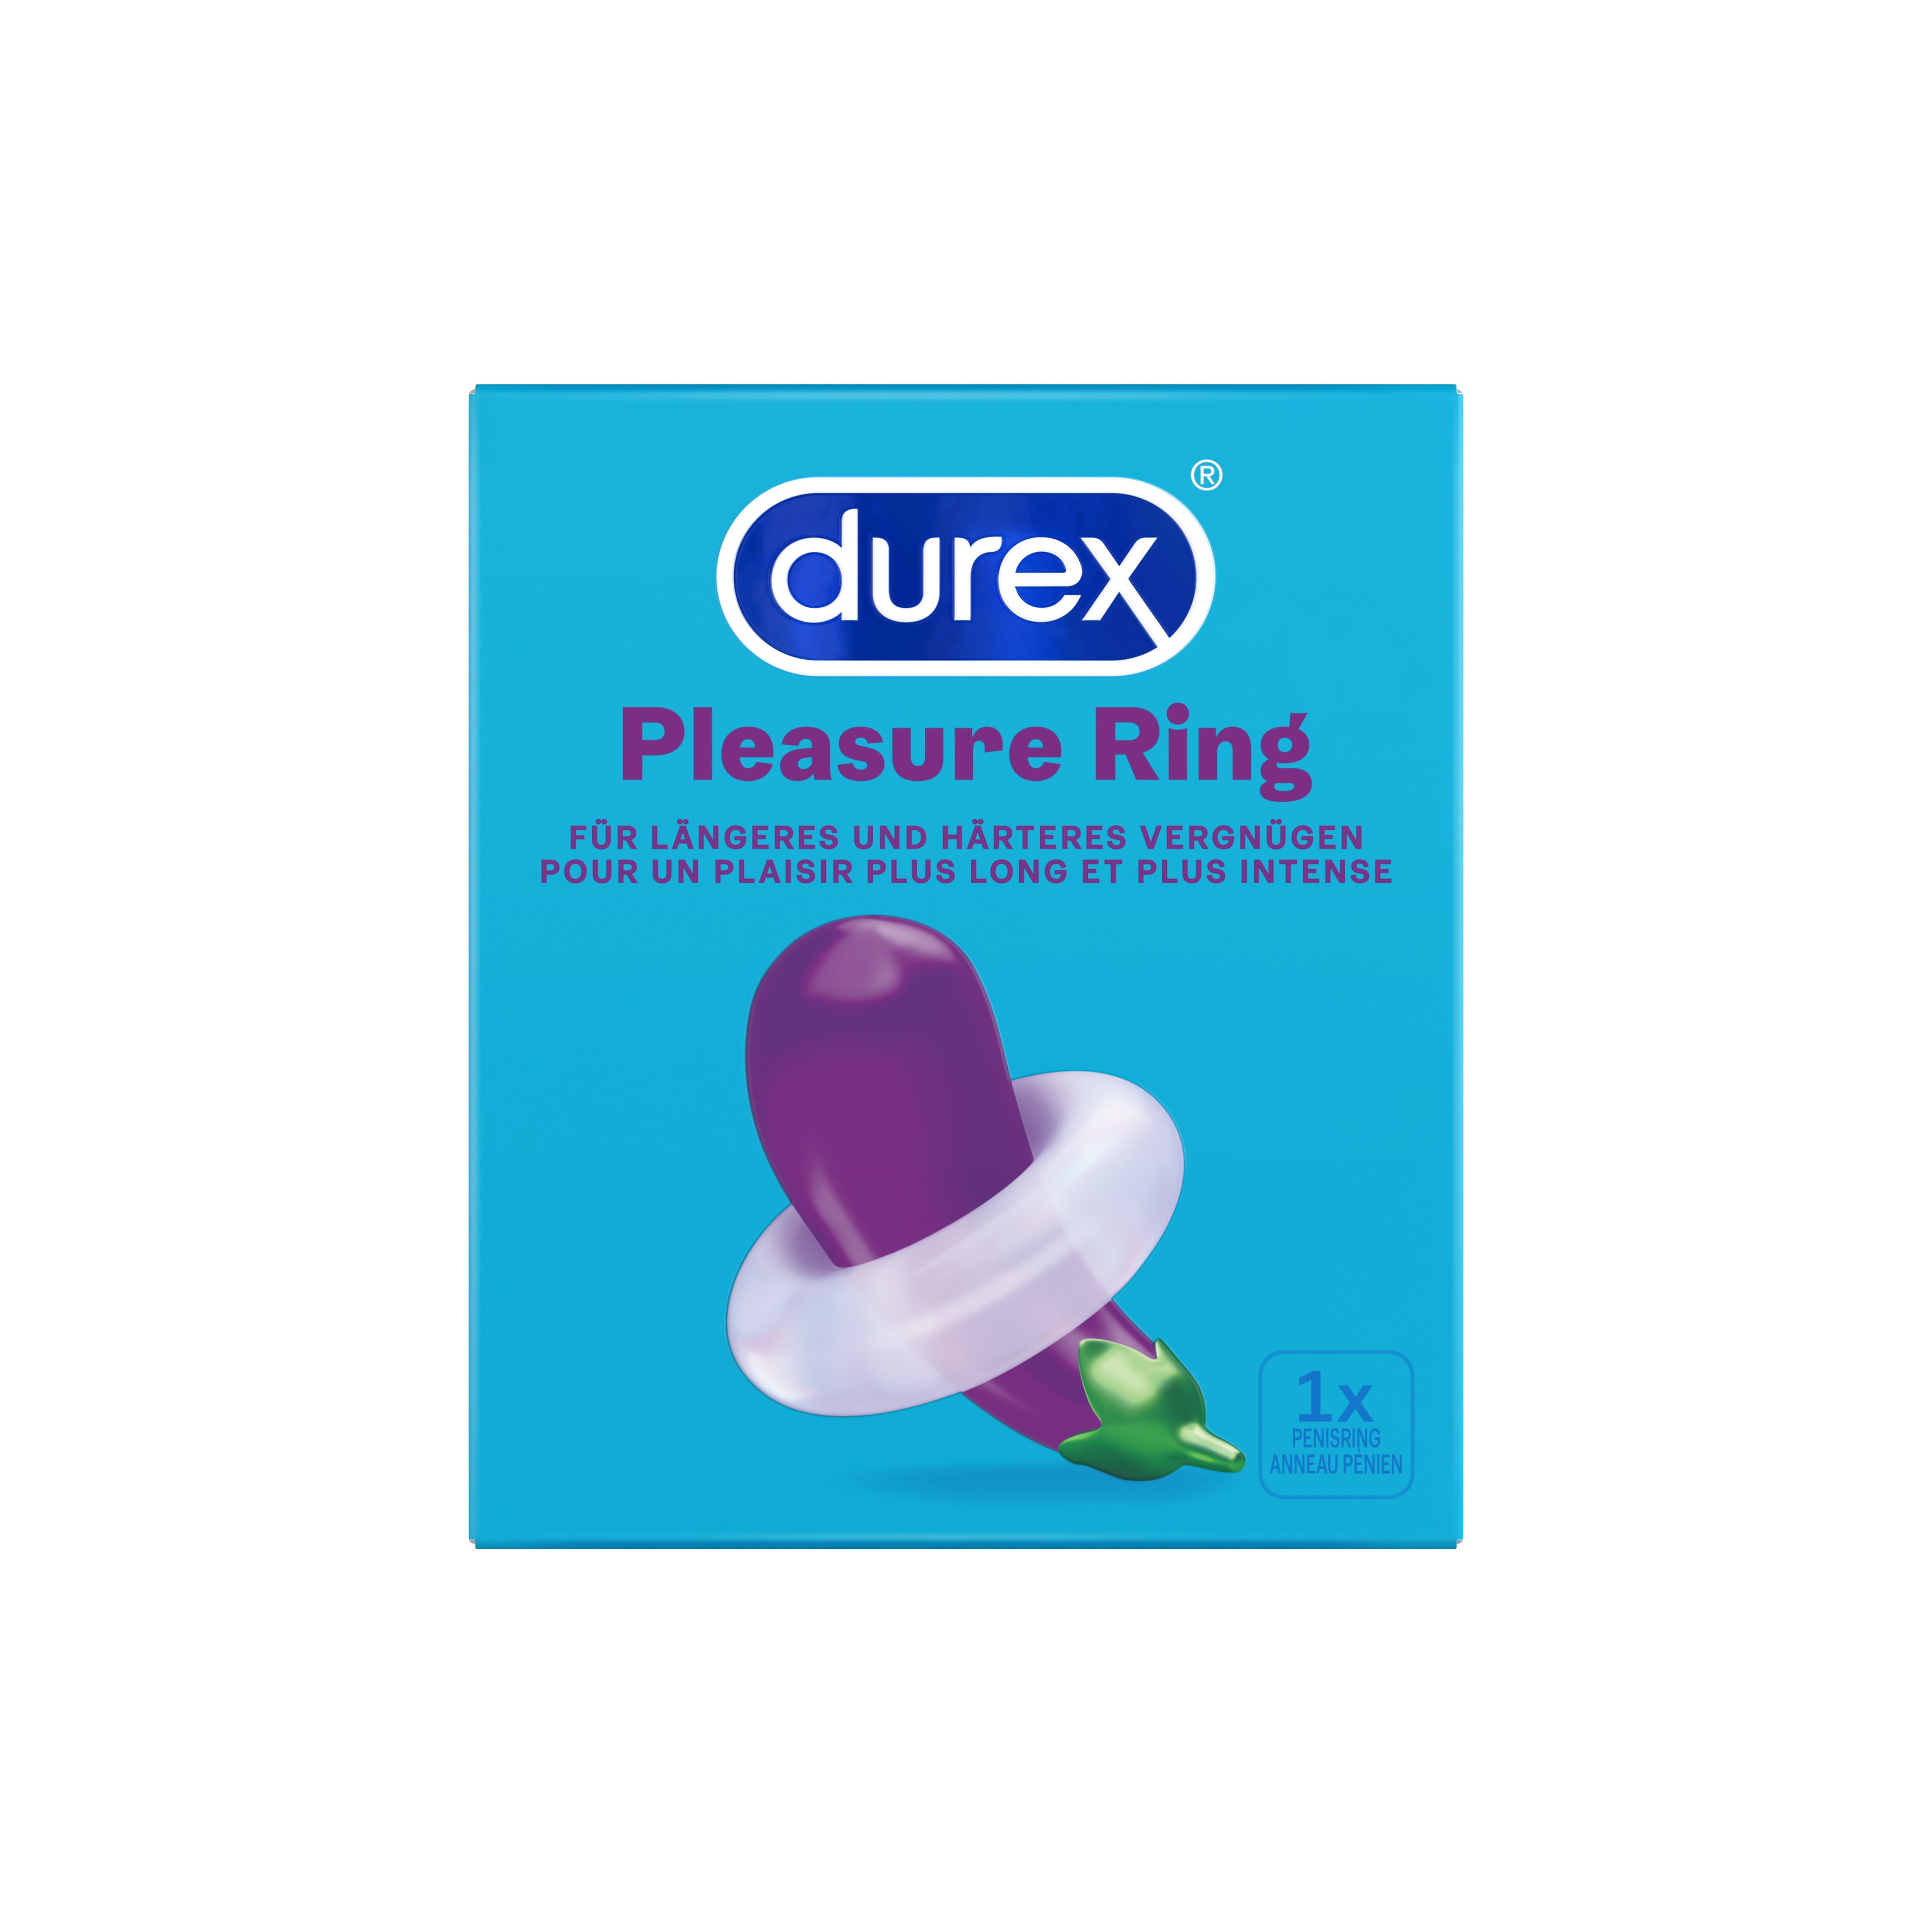 Durex Pleasure Ring: Penisring, transparent - vergleichen und günstig kaufen